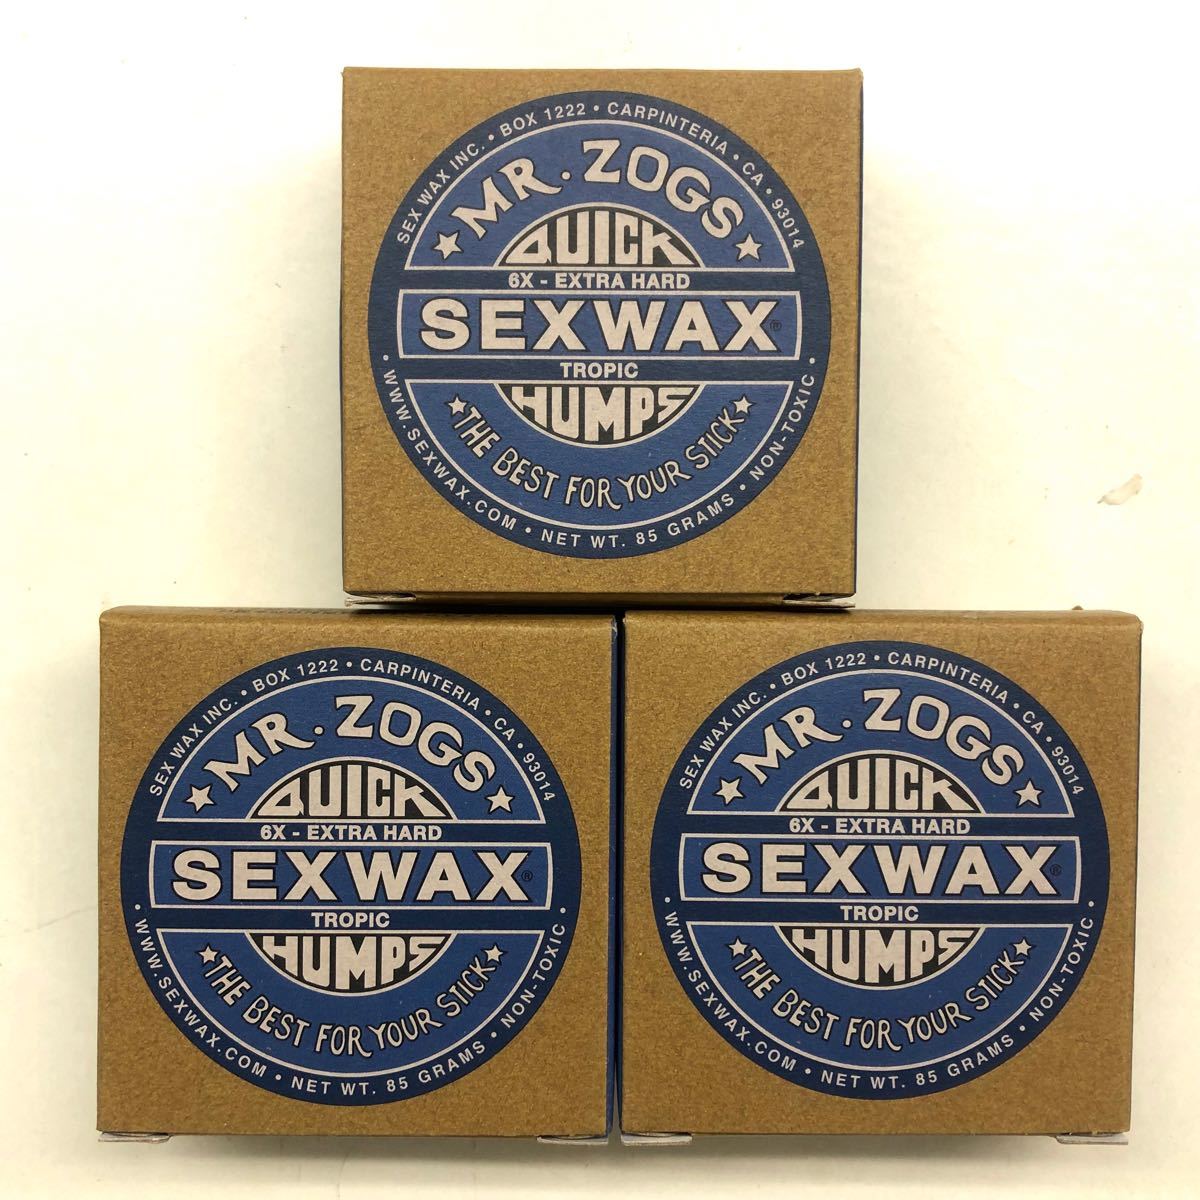 セックスワックス sexwax サーフィン wax トロピカル 6X surfing 真夏用 tropical NO398